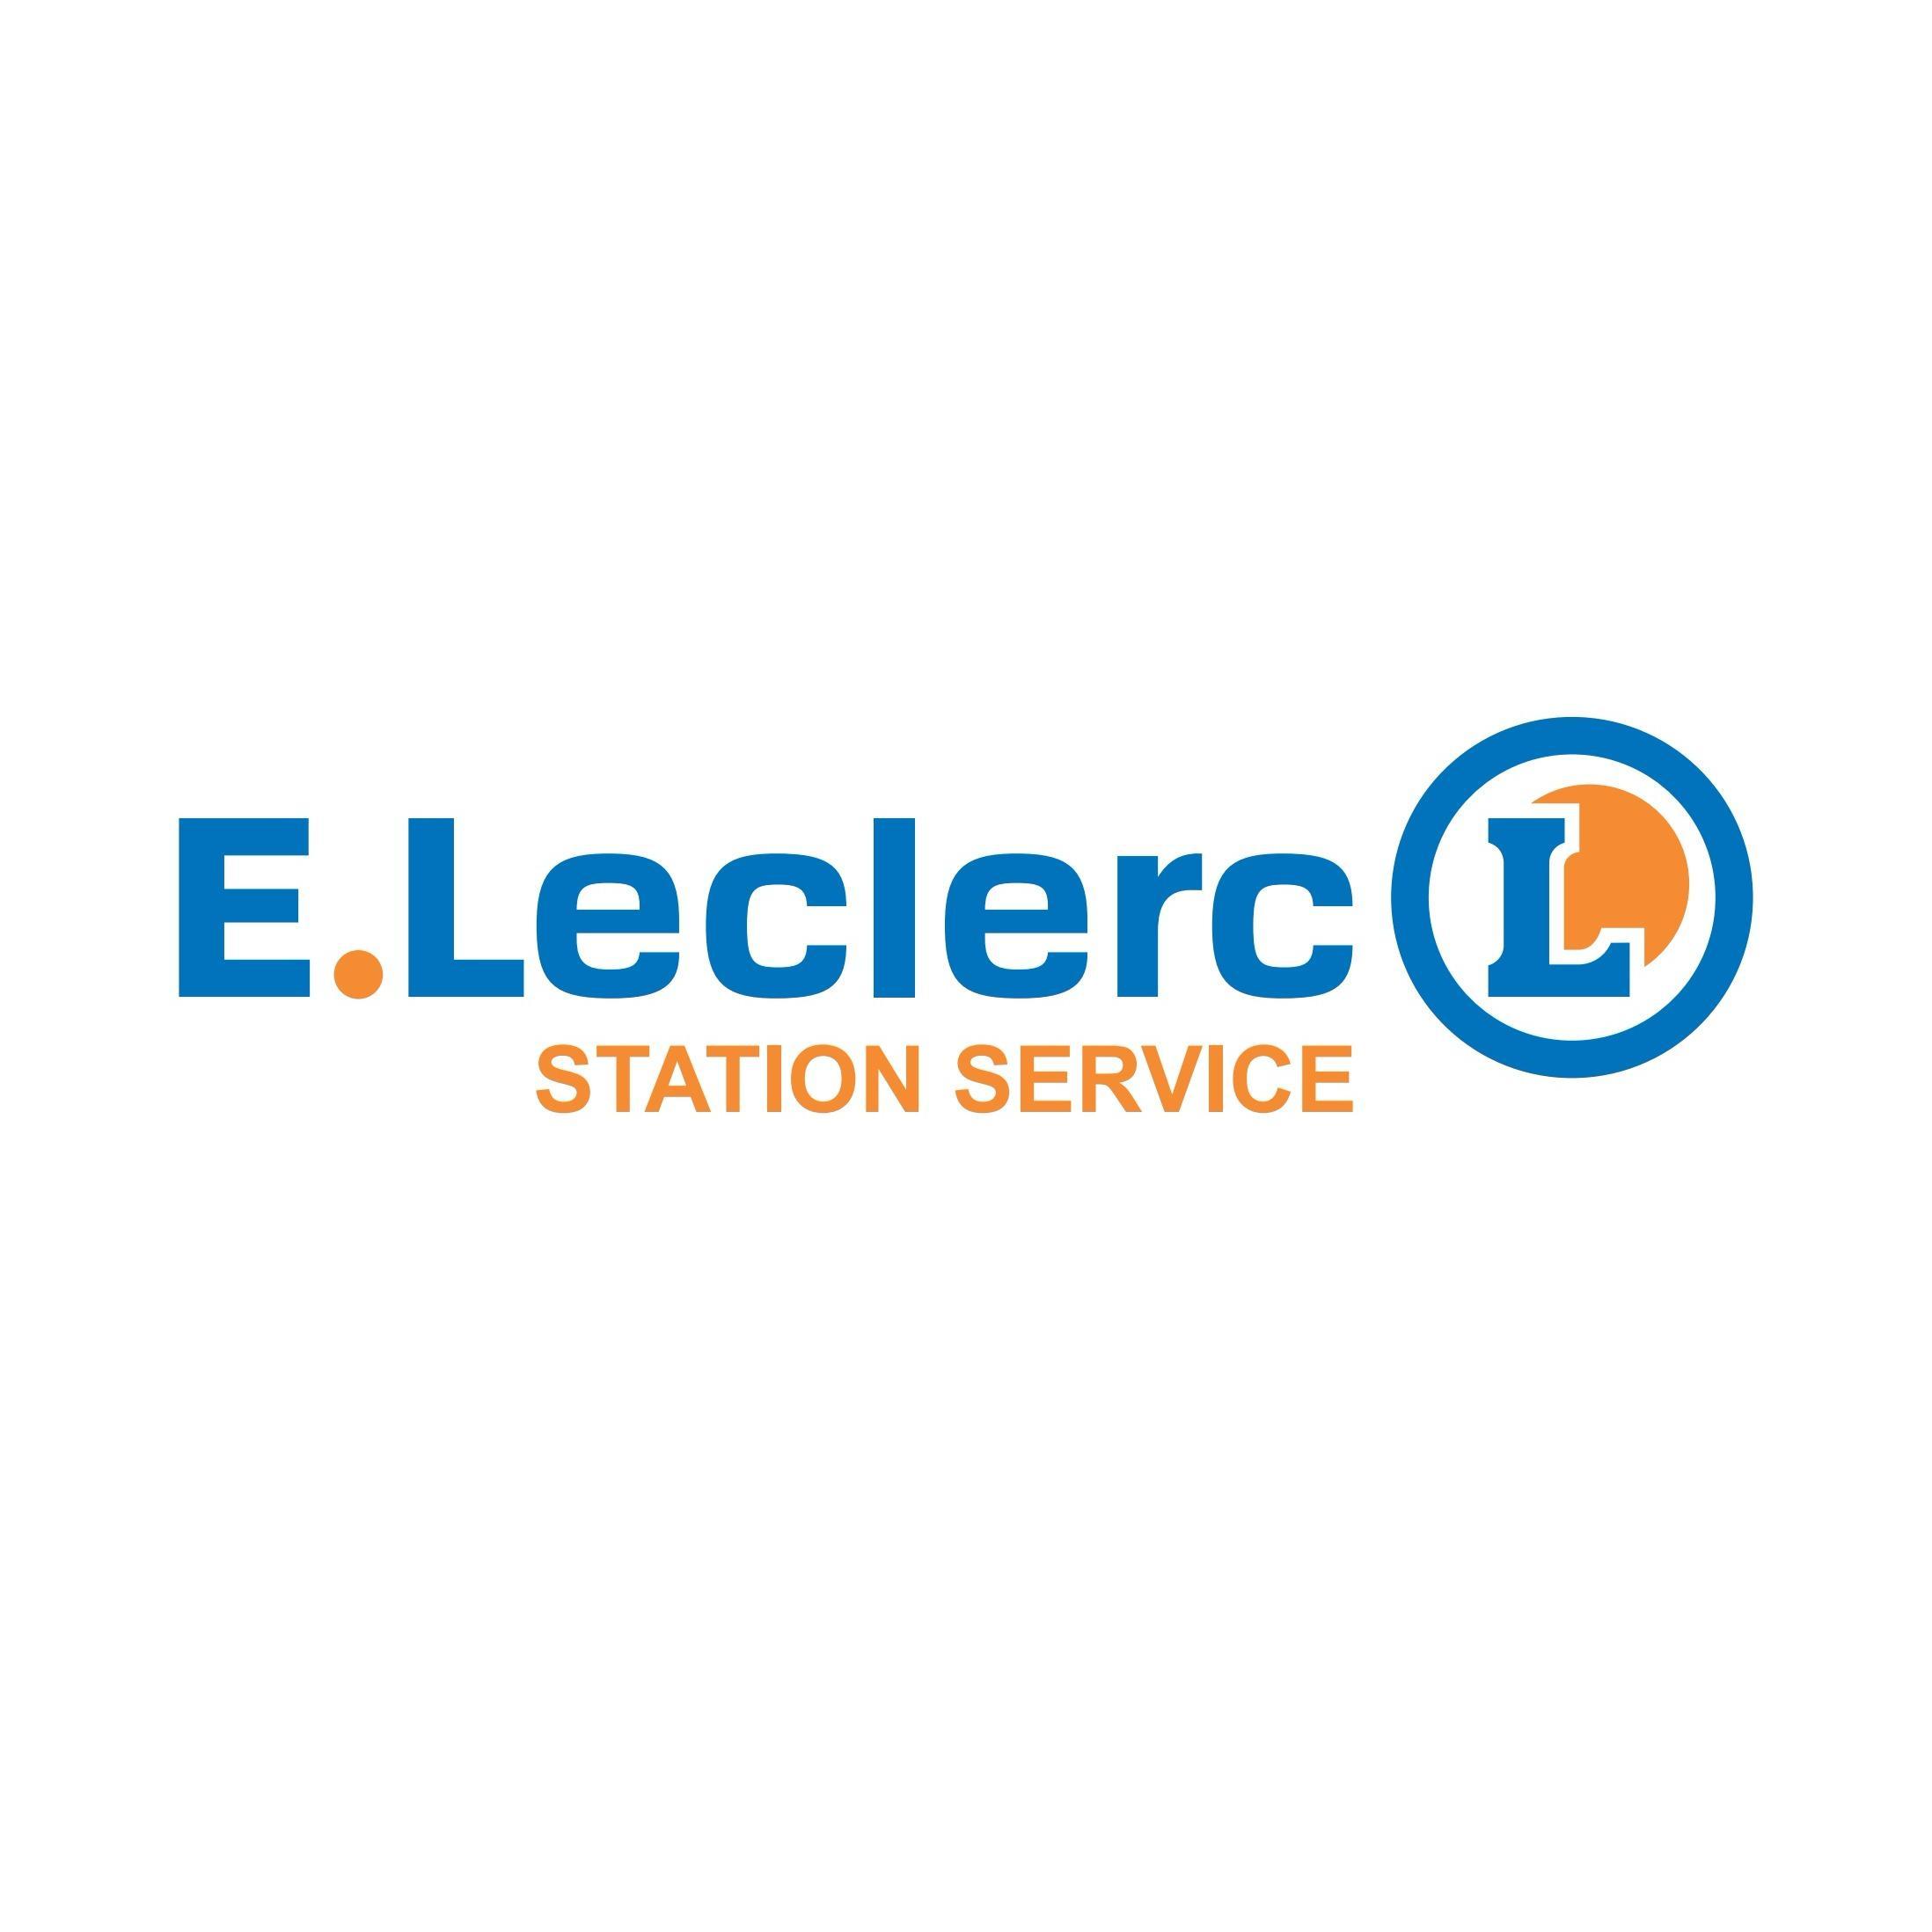 E.leclerc Station Service Rennes